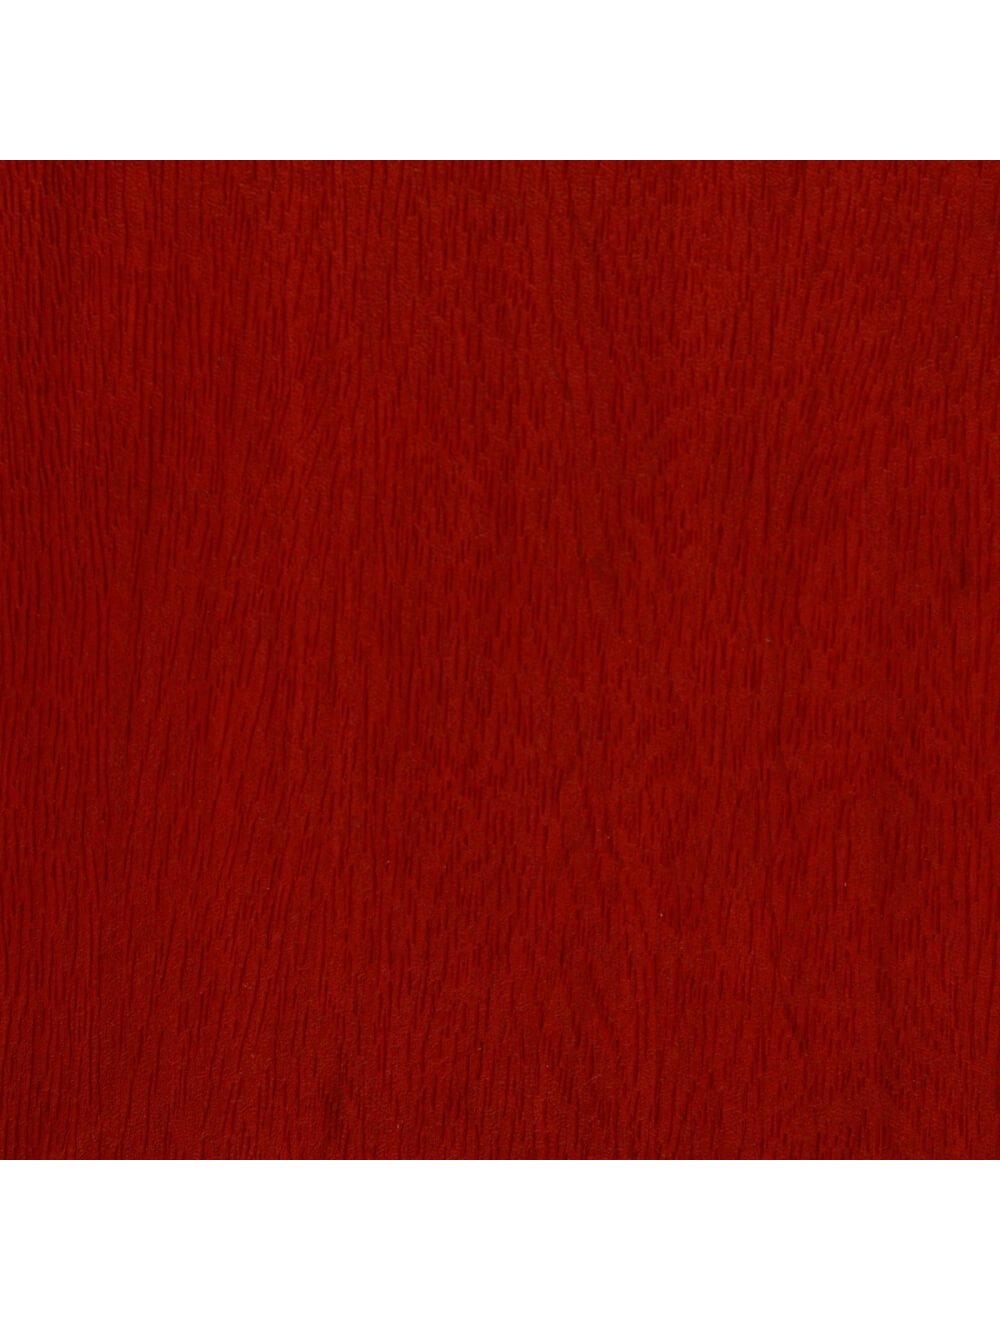 حامل مادة الحبوب الخشبية الحمراء في واشنطن (E948)